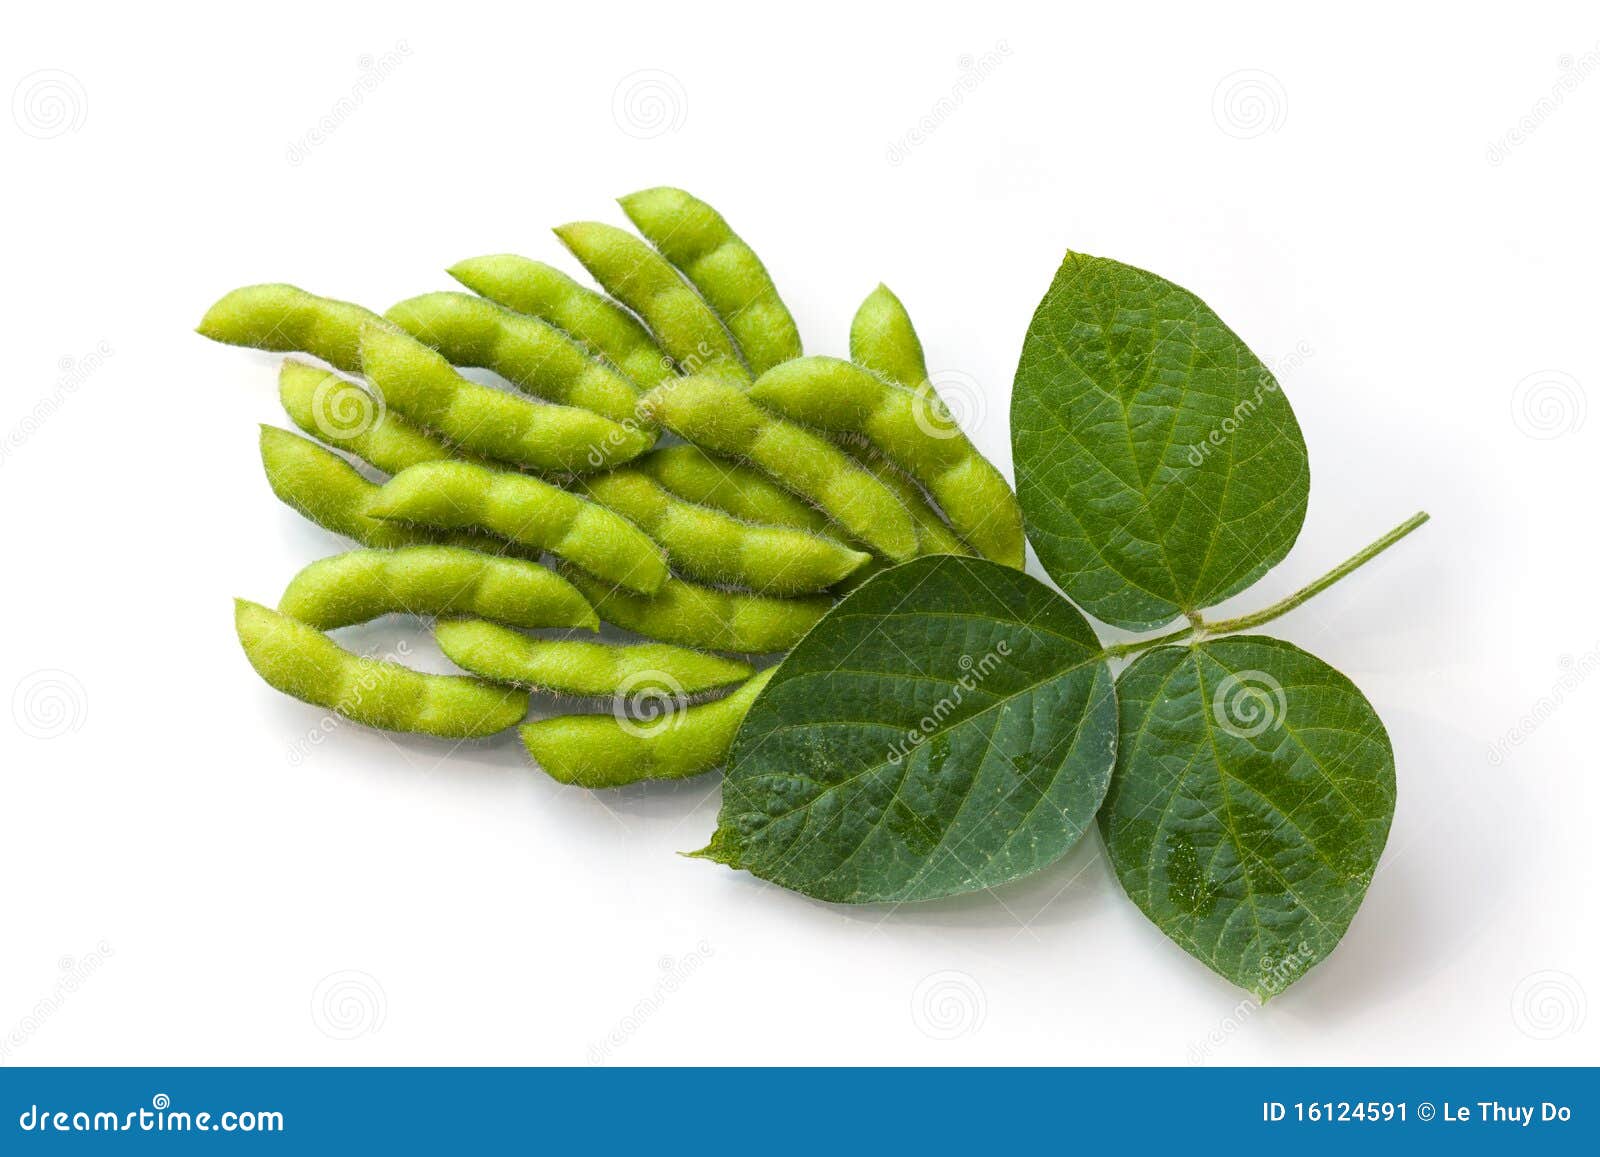 fresh soy beans